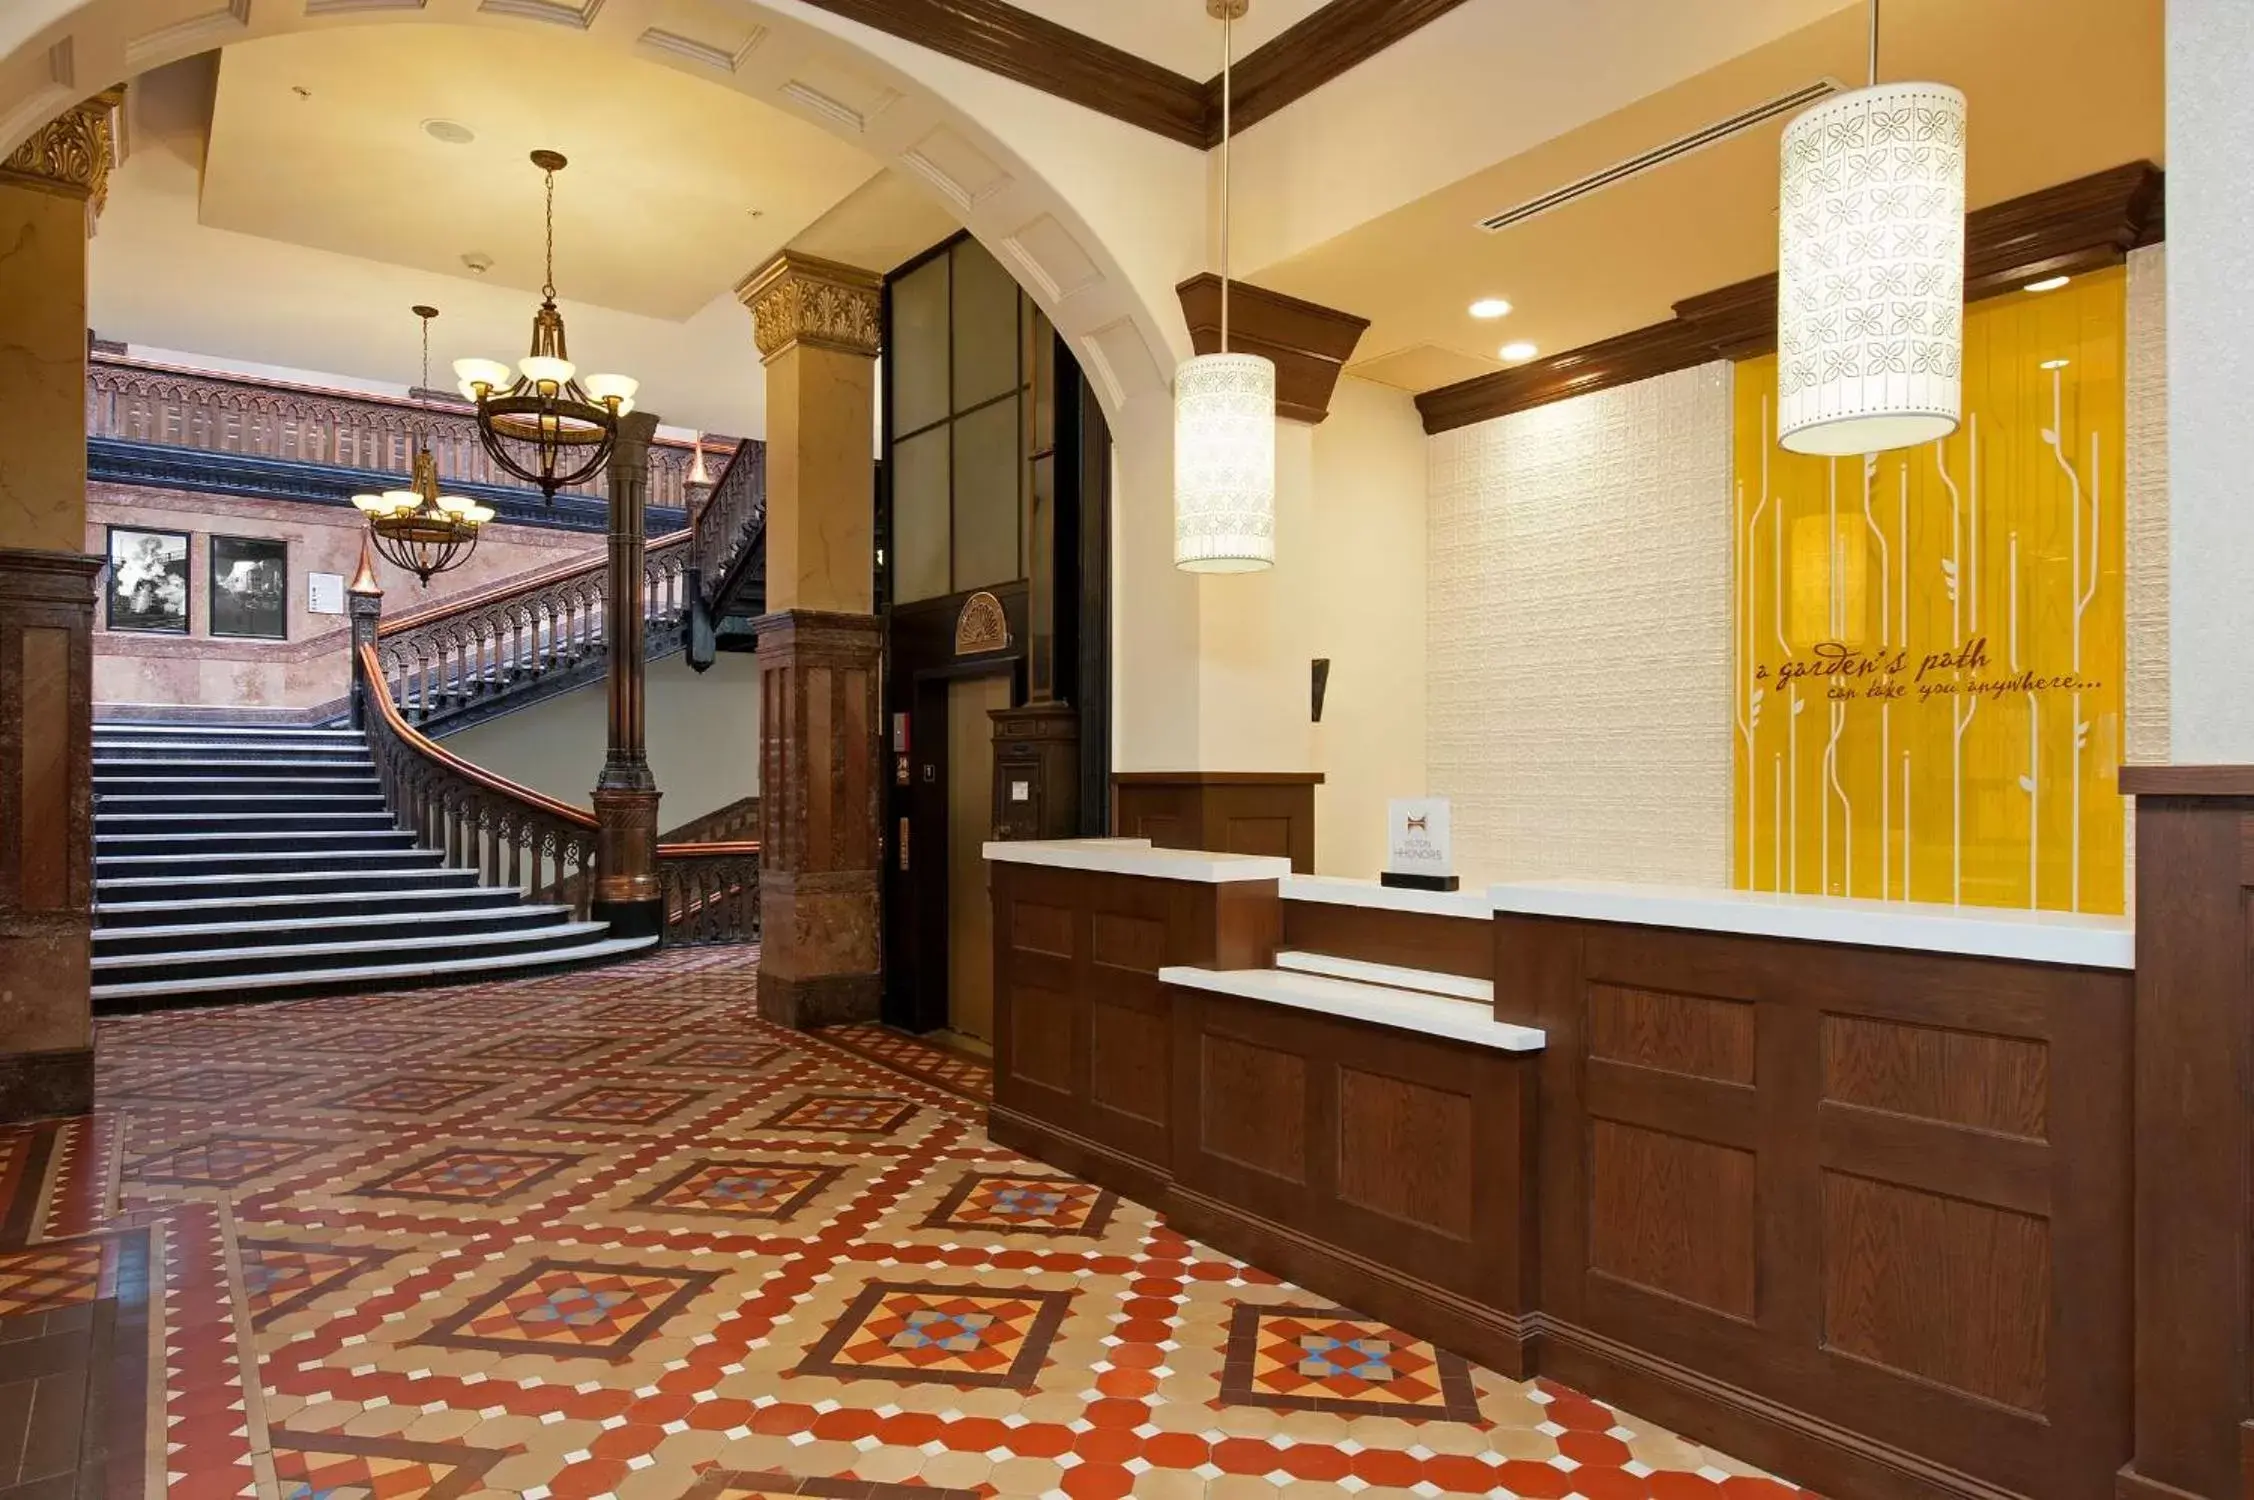 Lobby or reception, Lobby/Reception in Hilton Garden Inn Milwaukee Downtown